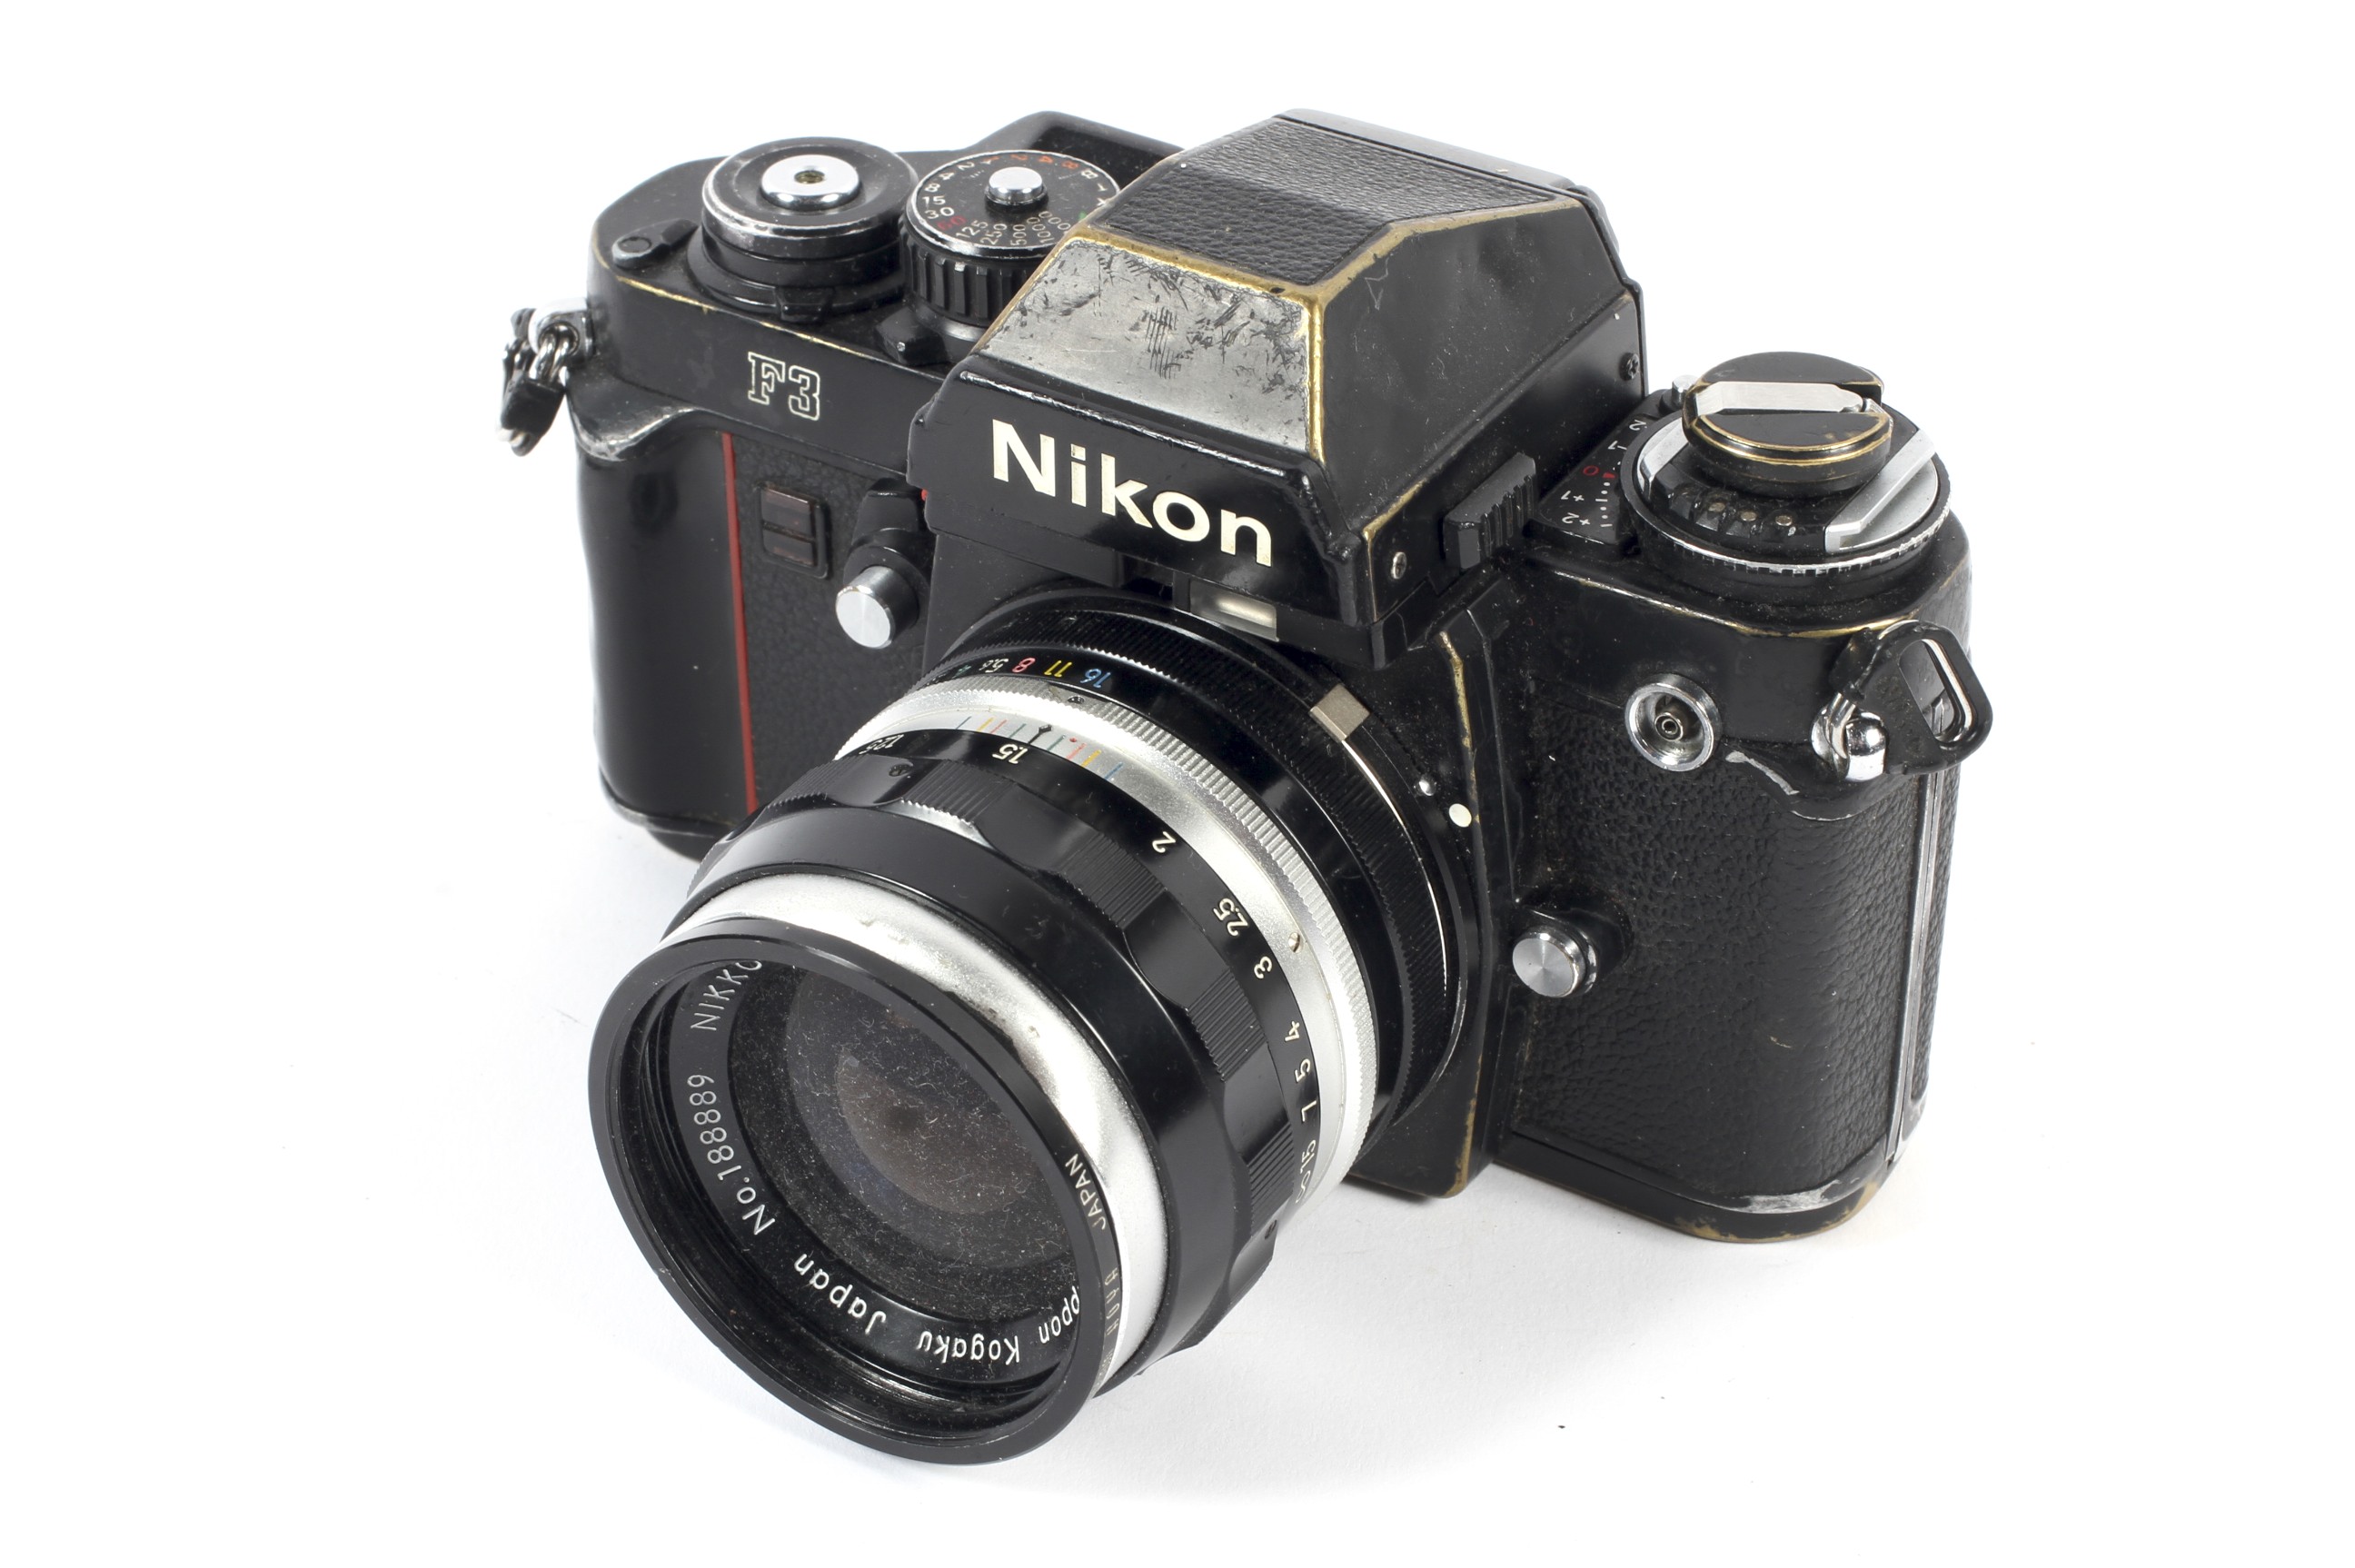 A black Nikon F3 35mm eye level SLR camera. With a 35mm 1:2.